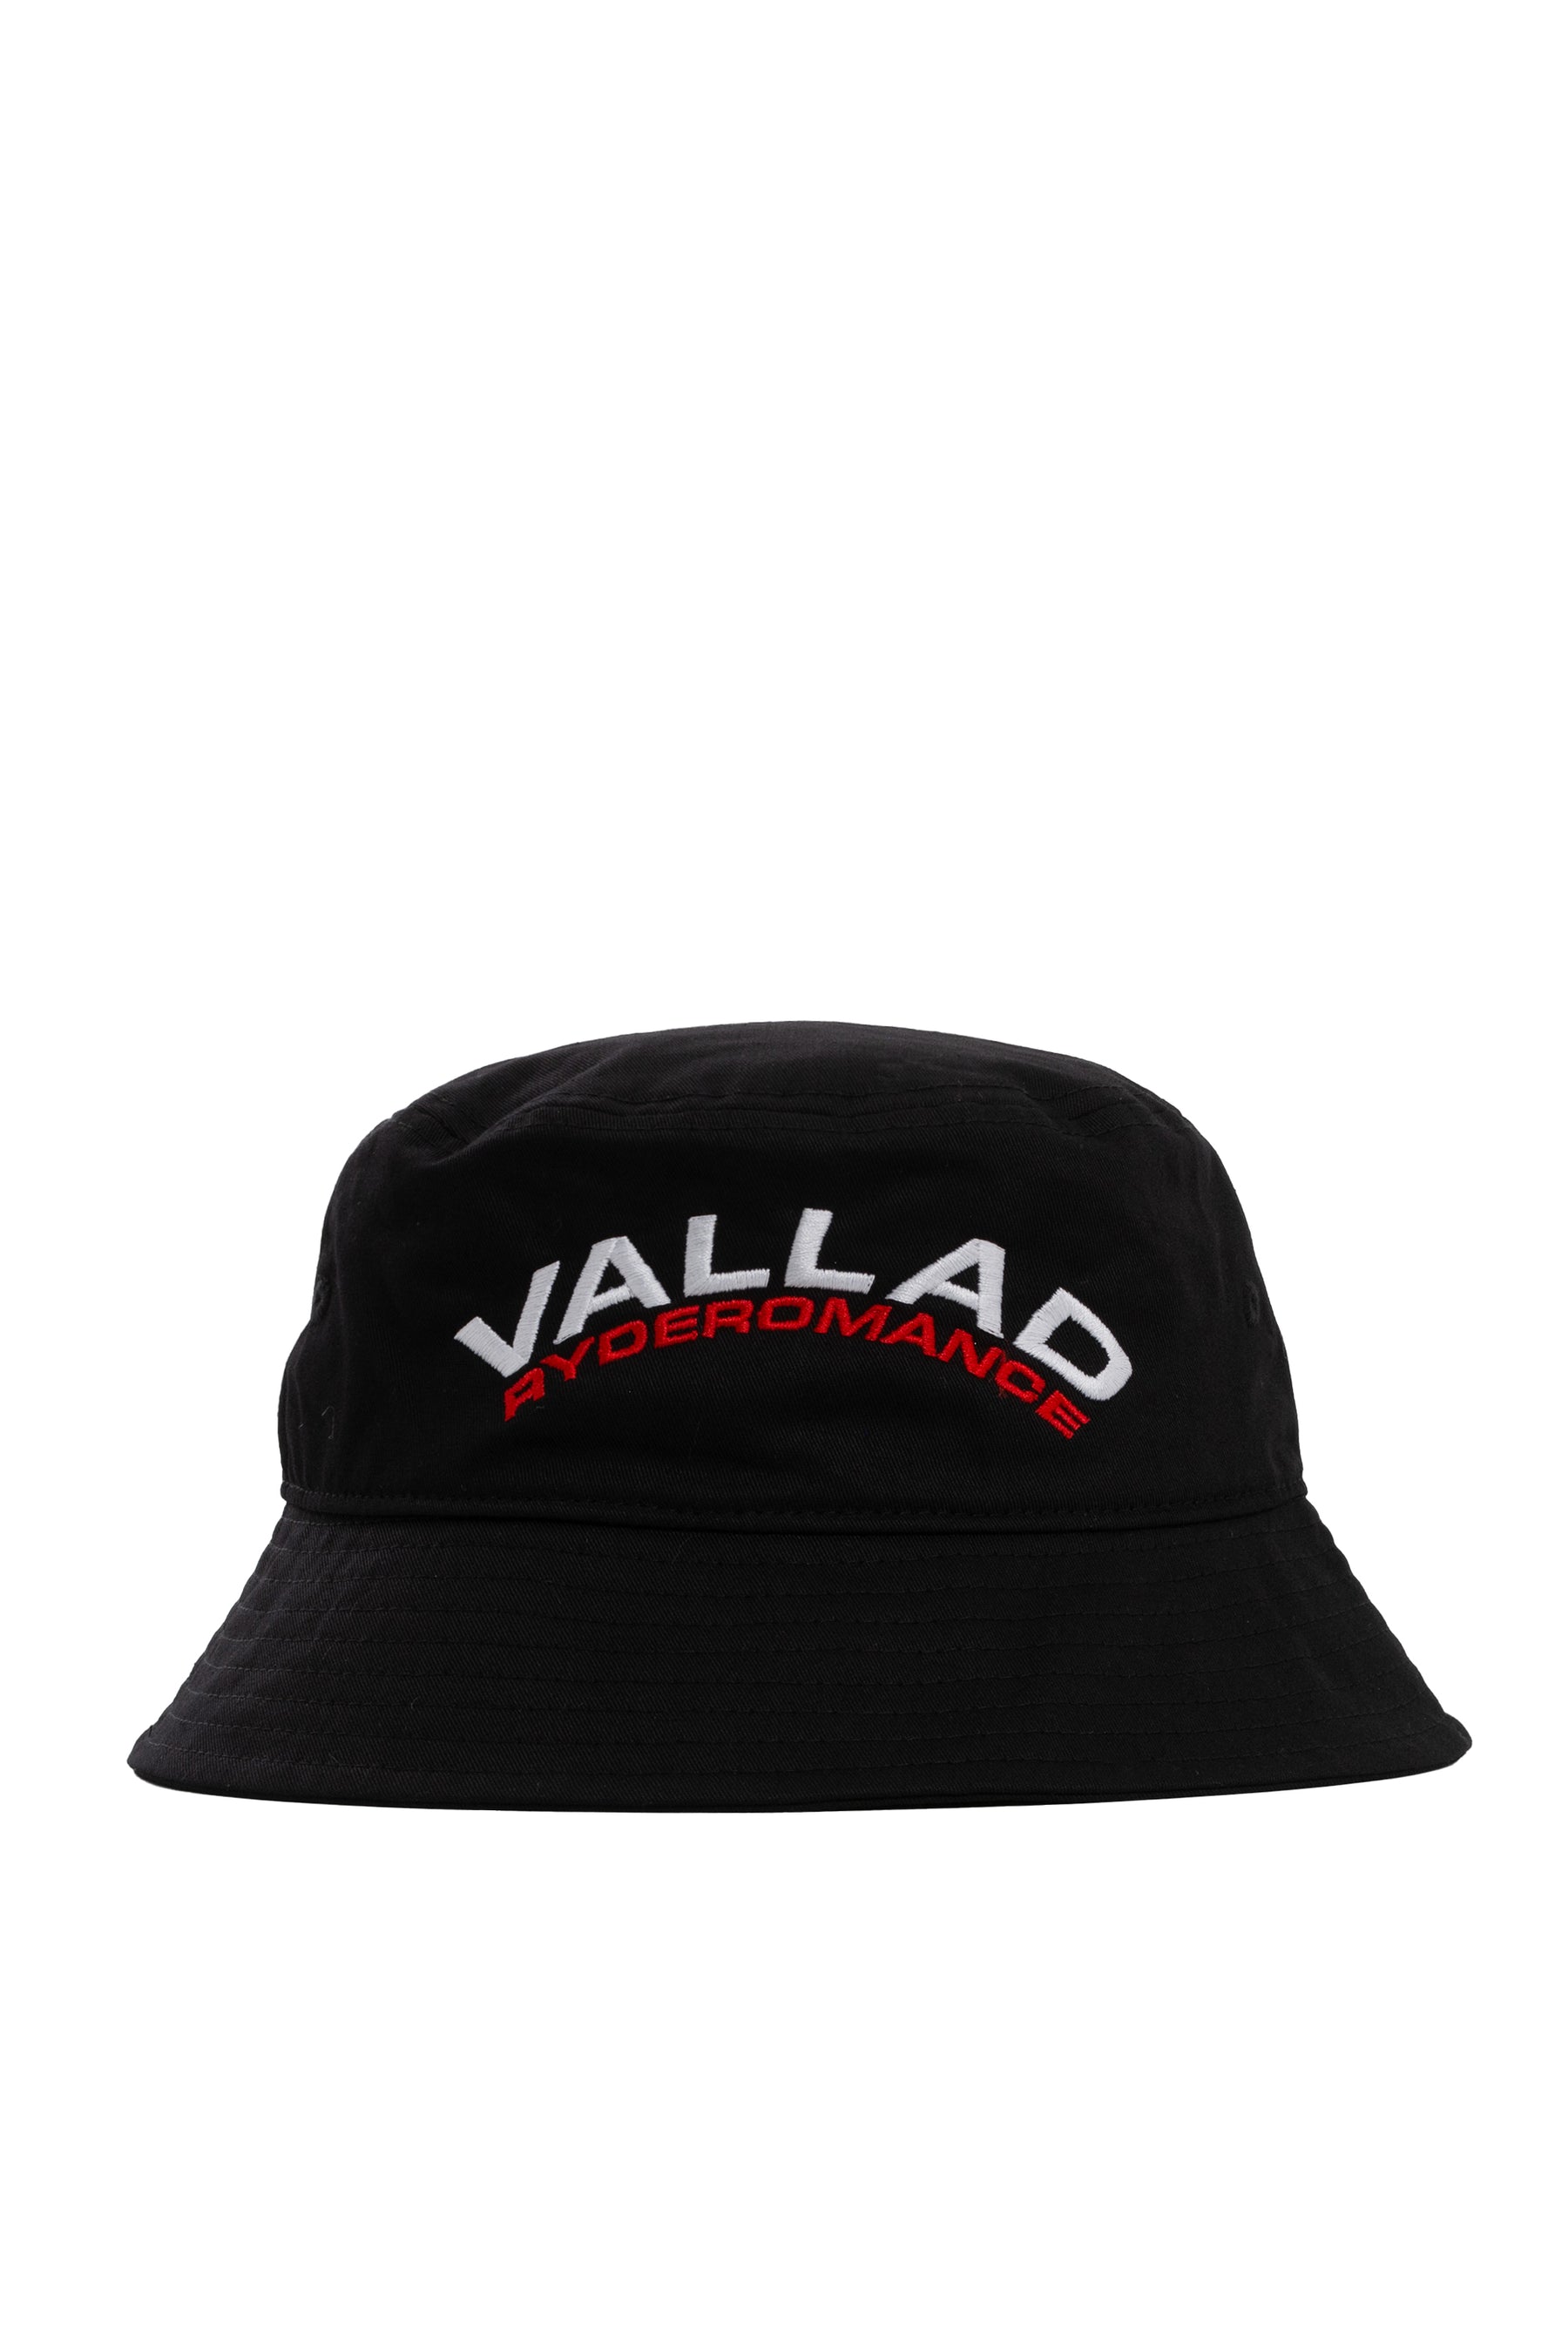 VALLAD FW23 VALLADXSTUDIO 33 BUCKET HAT / BLK -NUBIAN